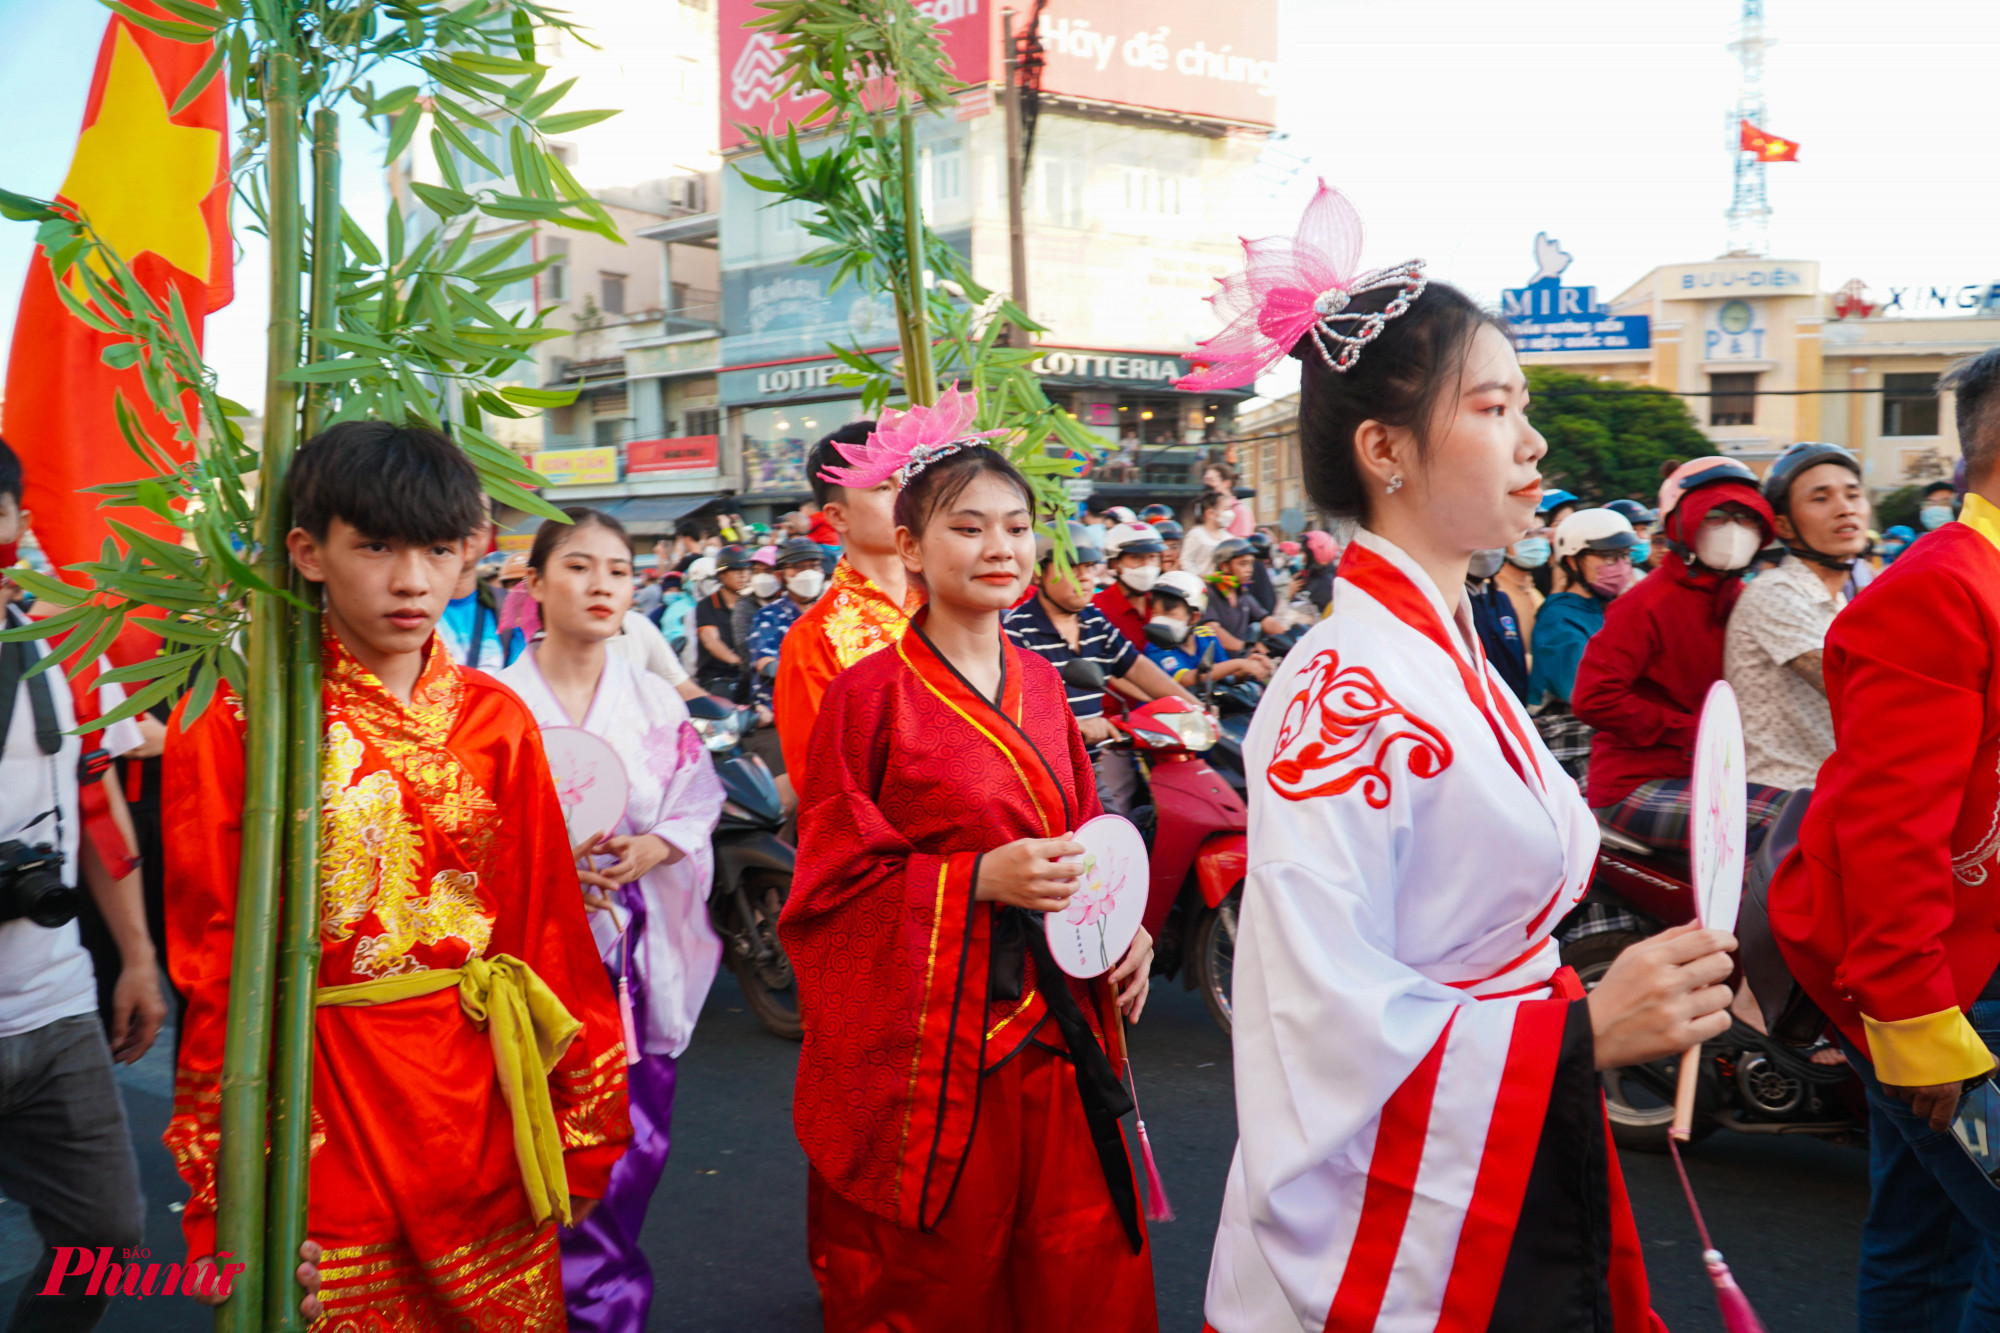 Hội Nguyên tiêu tại quận 5 được Bộ Văn hóa - Thể thao và Du lịch công nhận là Di sản văn hóa phi vật thể cấp quốc gia. Lễ hội nhằm bảo tồn và phát huy những giá trị văn hóa, giá trị tinh thần, tính nhân văn, tình đoàn kết gắn bó giữa đồng bào Việt - Hoa, làm phong phú thêm đời sống văn hóa của nhân dân thành phố.